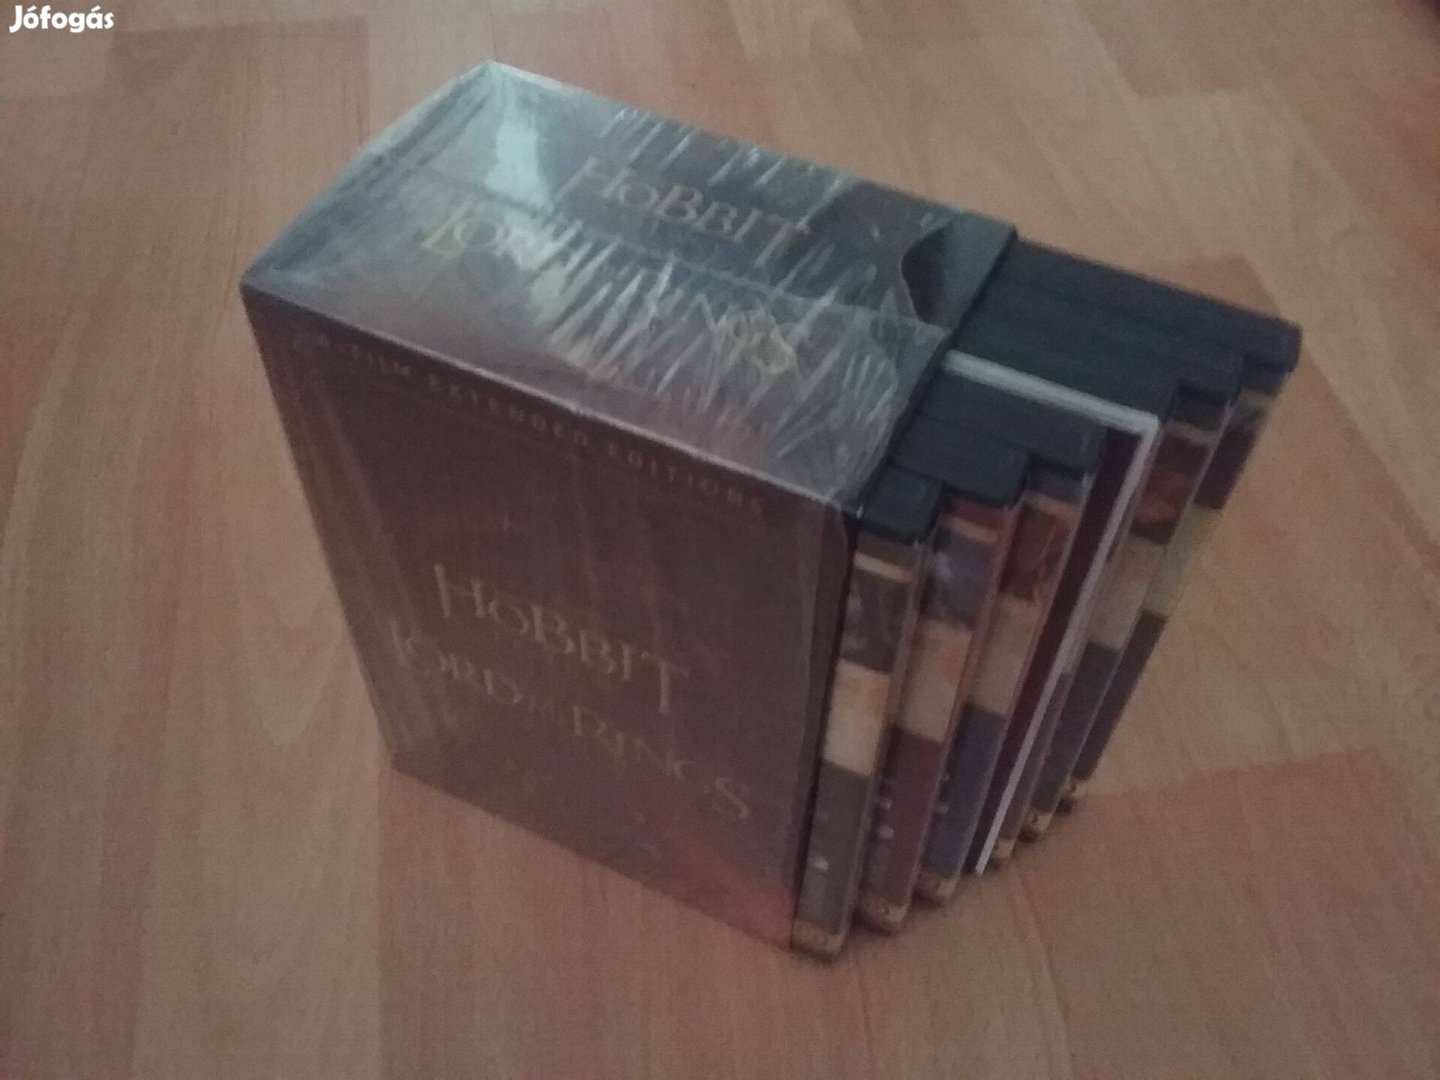 Középfölde gyűjtemény. A Gyűrűk Ura + A Hobbit. 36 dvd